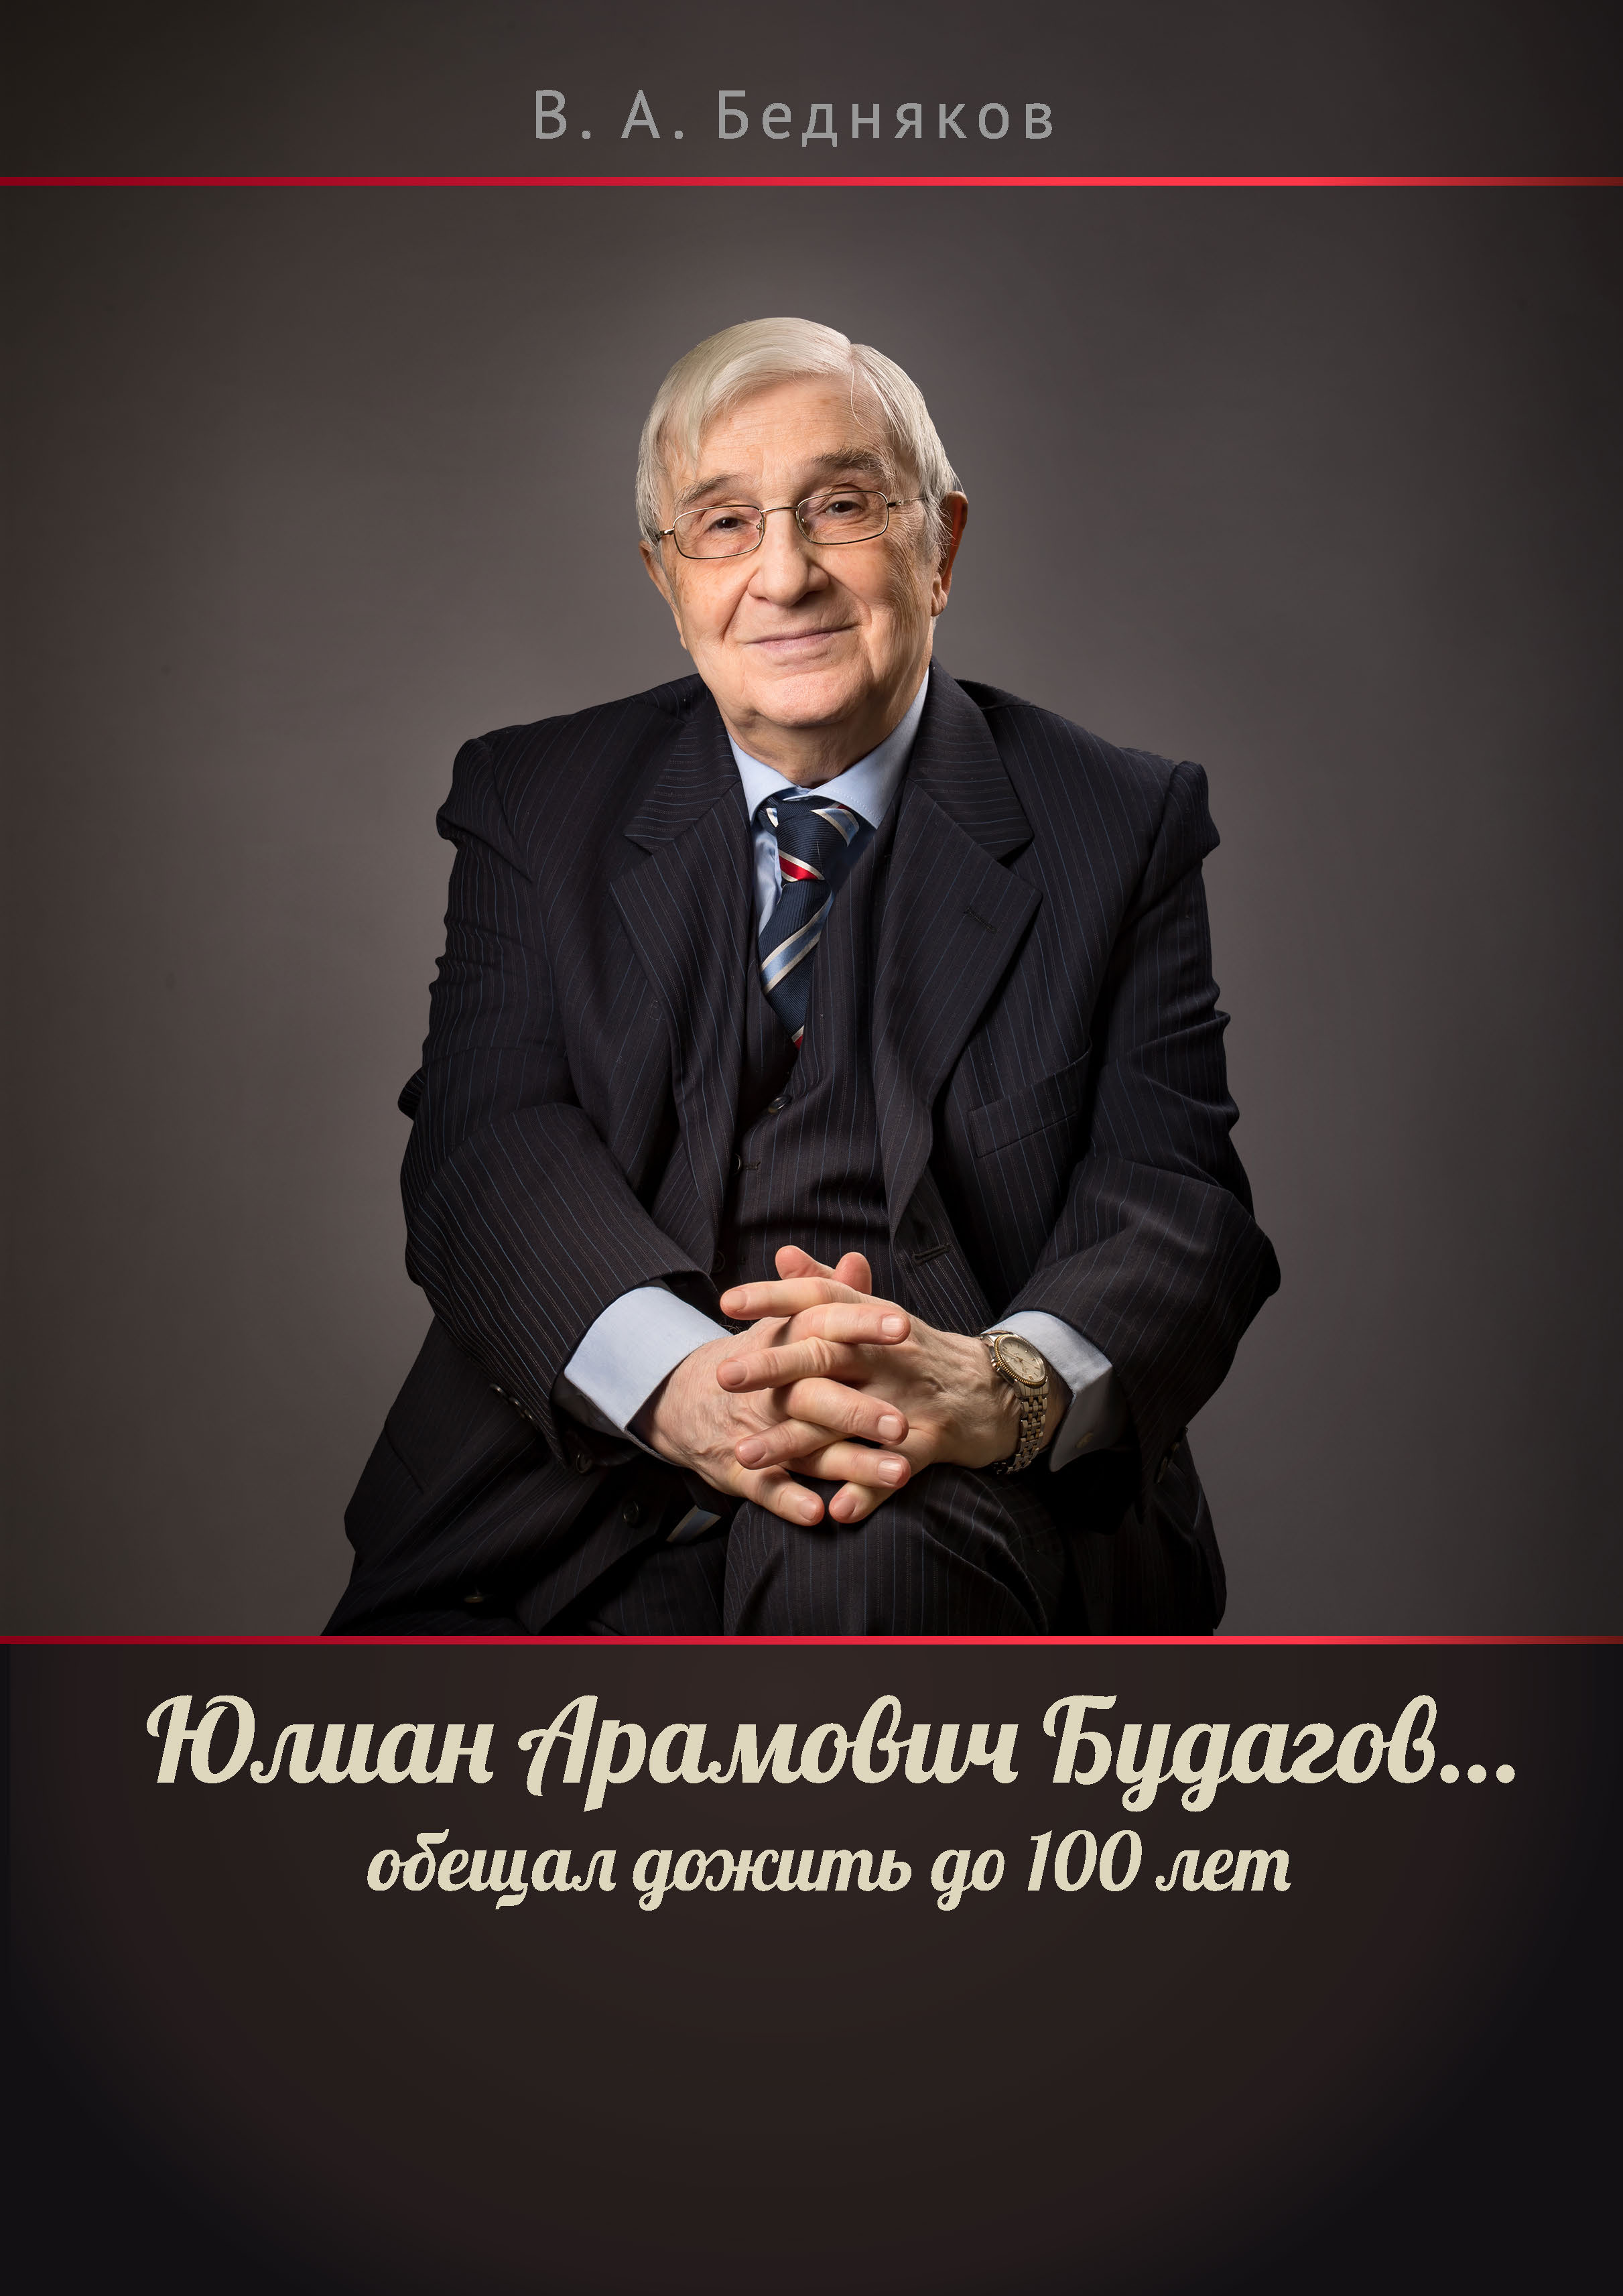 Юлиан Арамович Будагов… обещал дожить до 100 лет